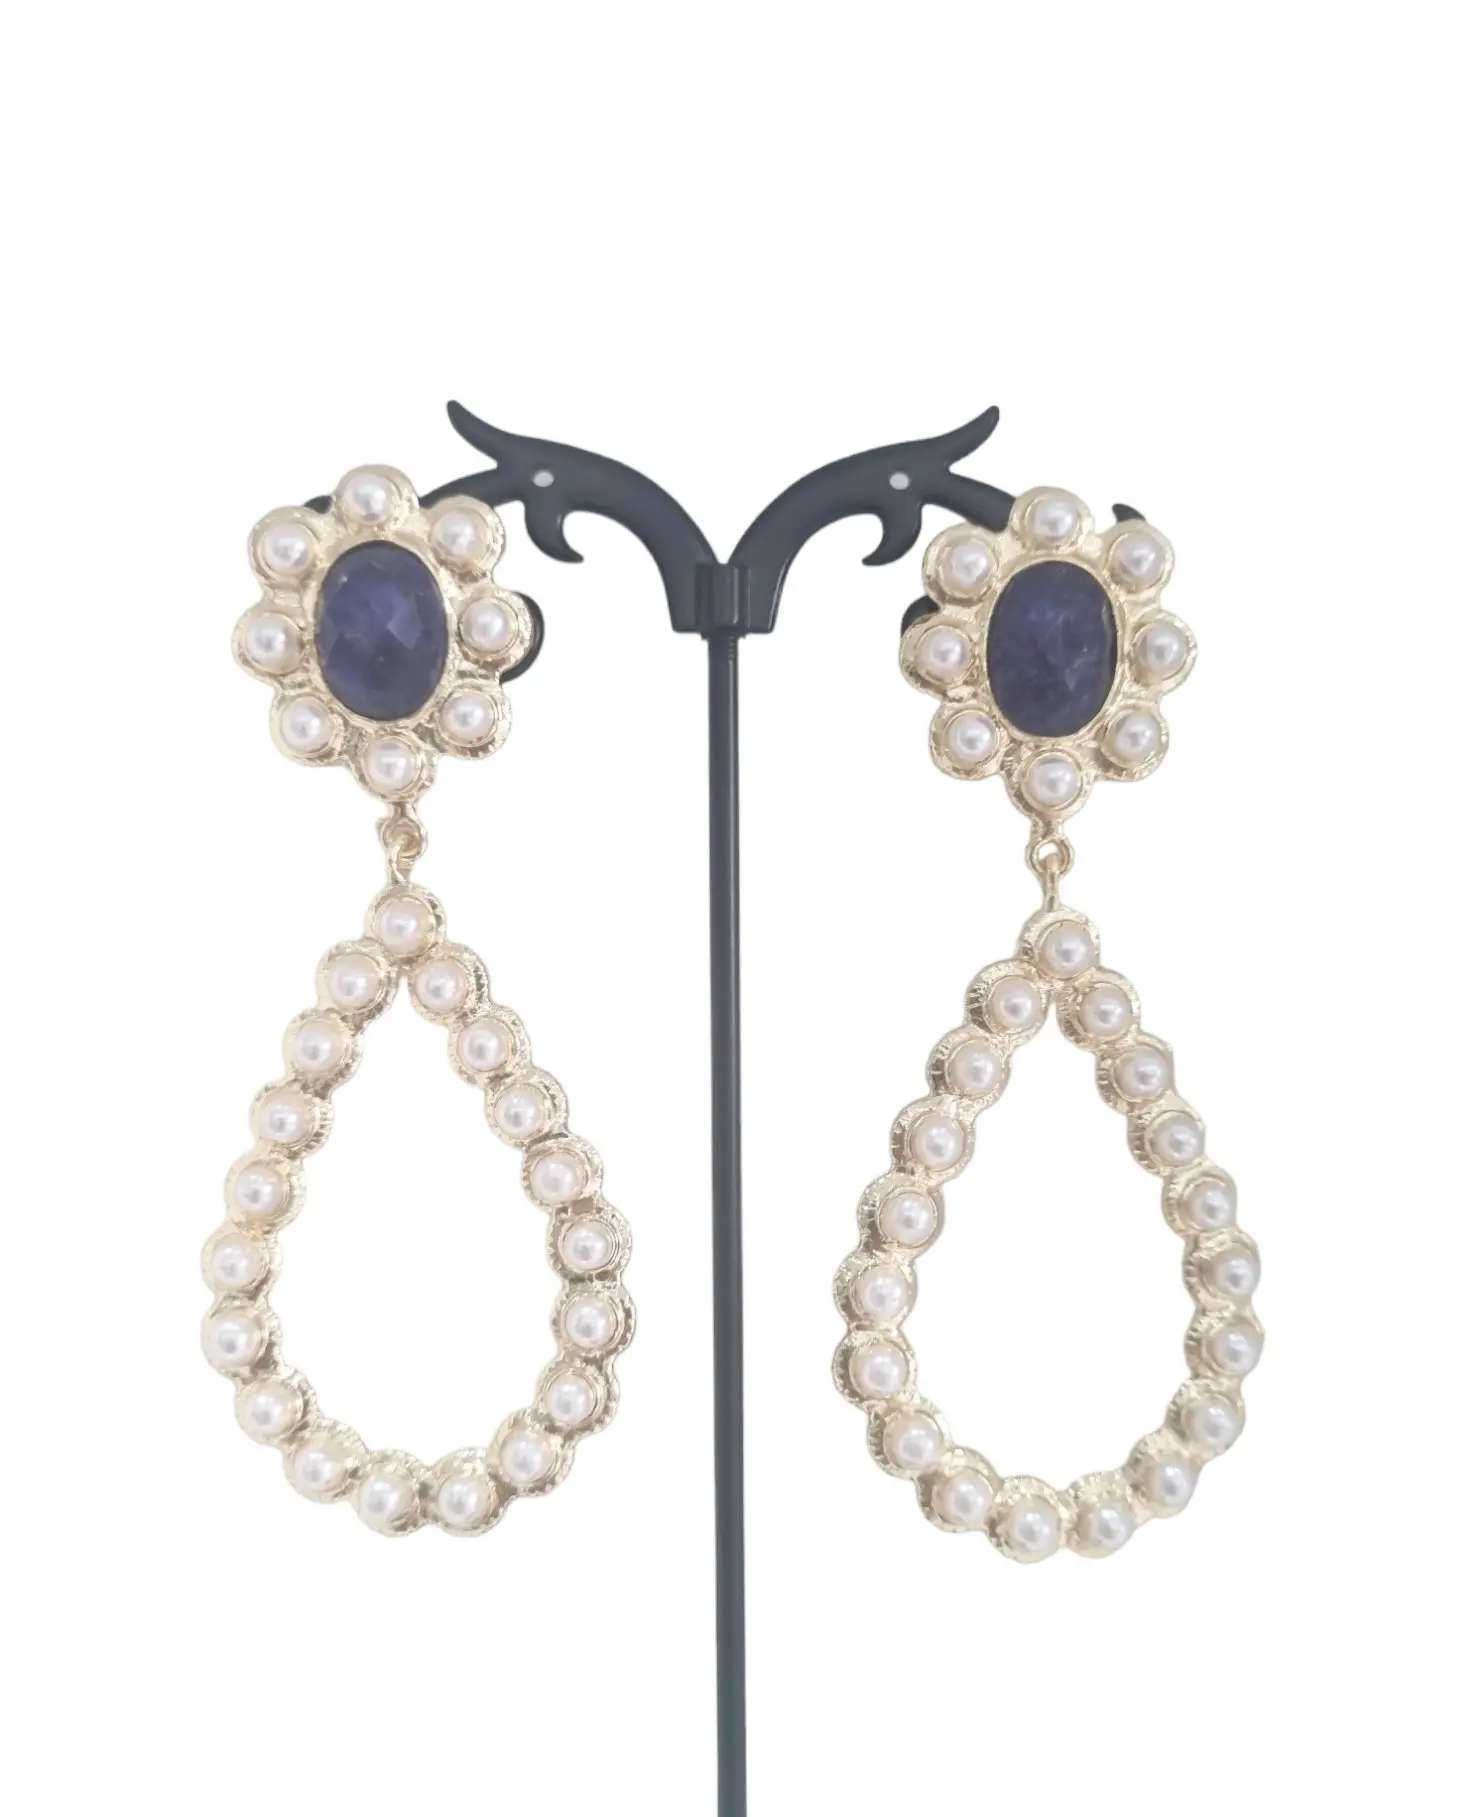 Orecchini realizzati con perle di fiume e lapislazzuli incastonati nell ottone.
Lunghezza 8cm
Peso  16gr